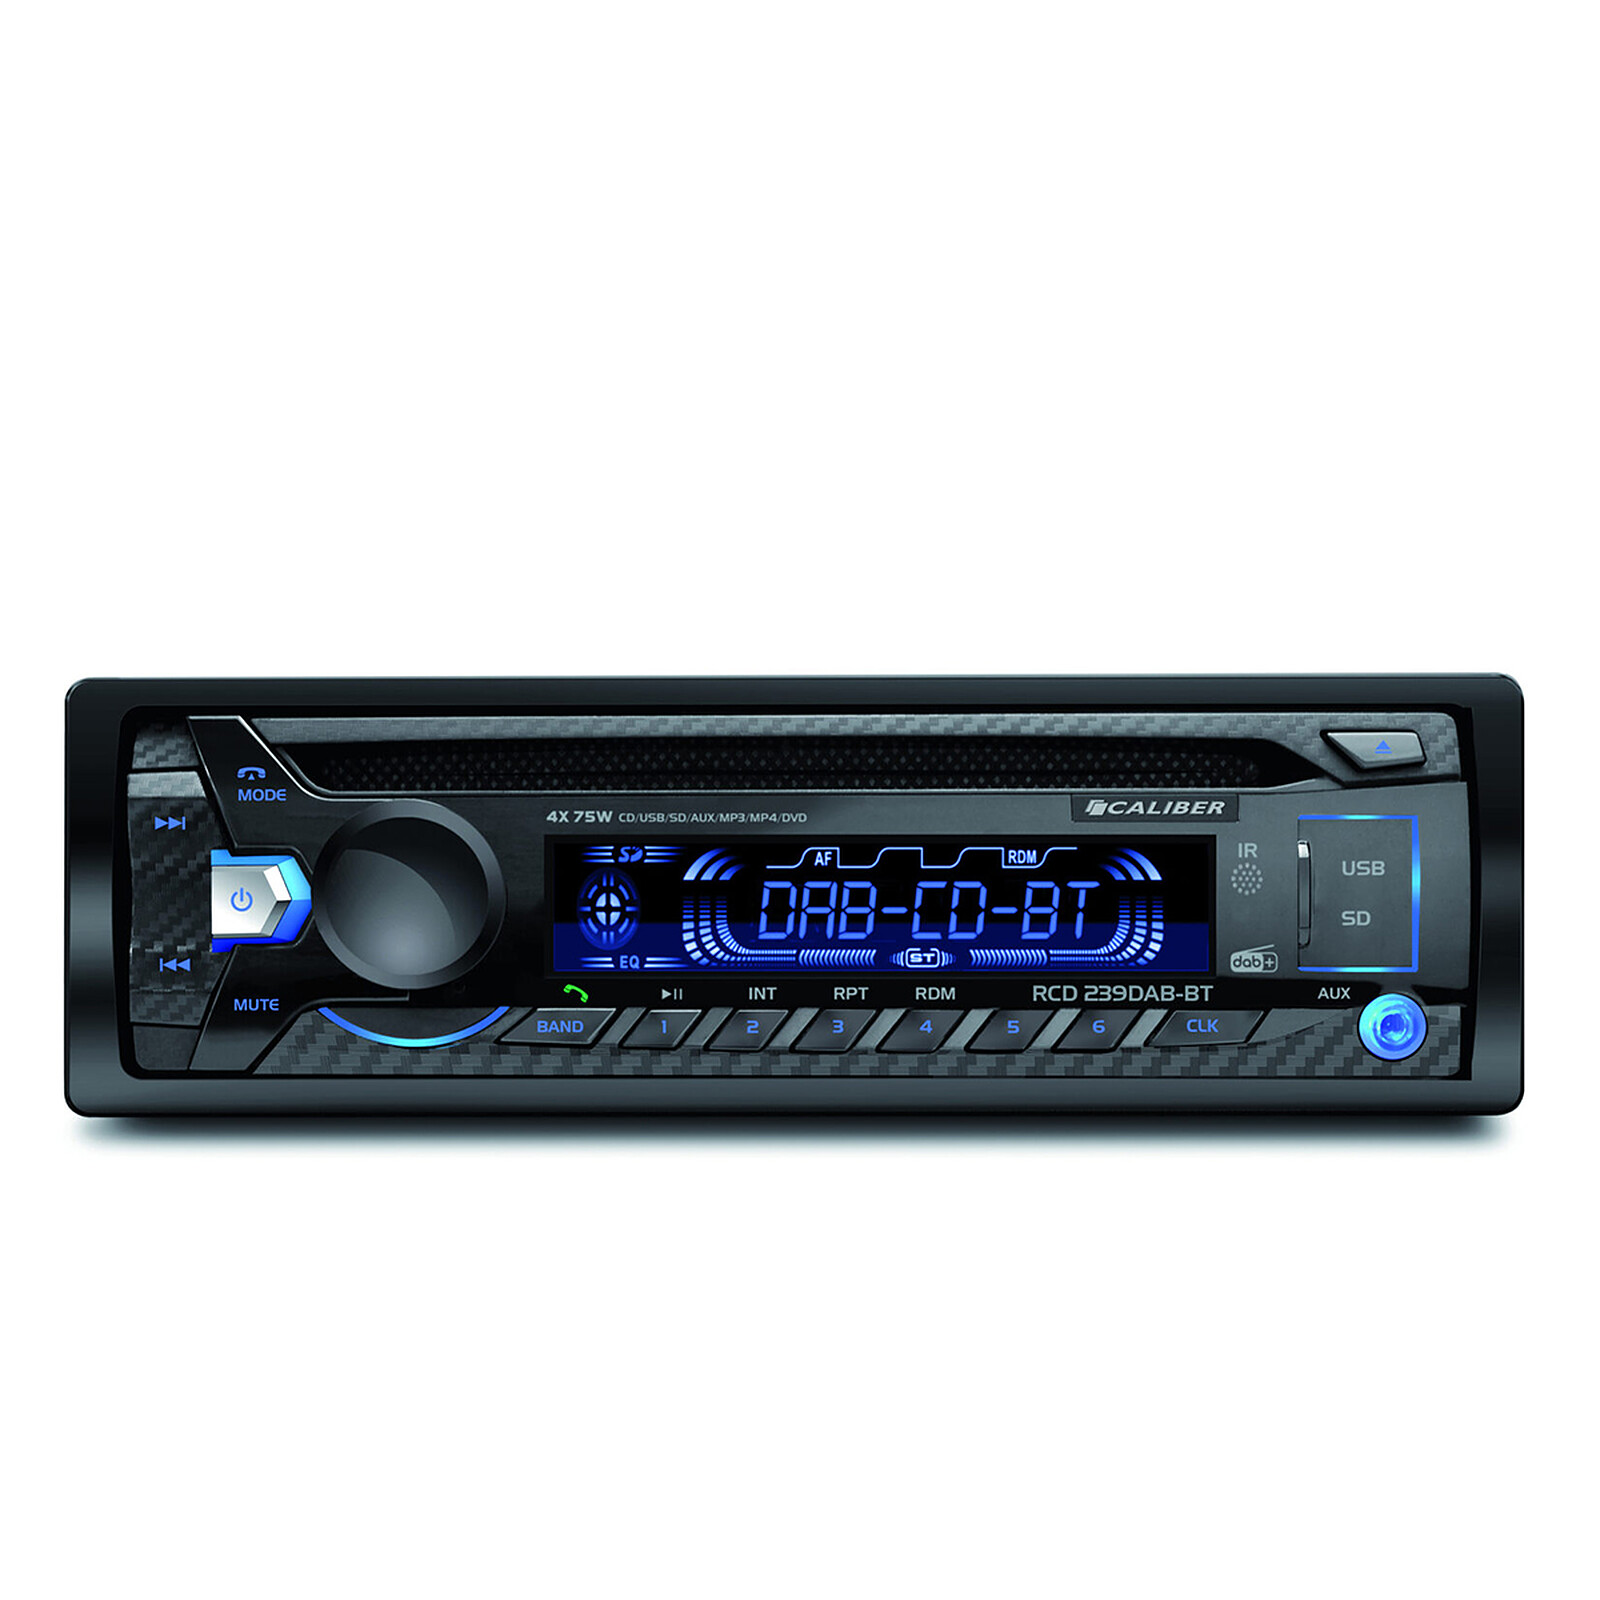 Autoradio K7 + changeur de cd JVC - Équipement auto